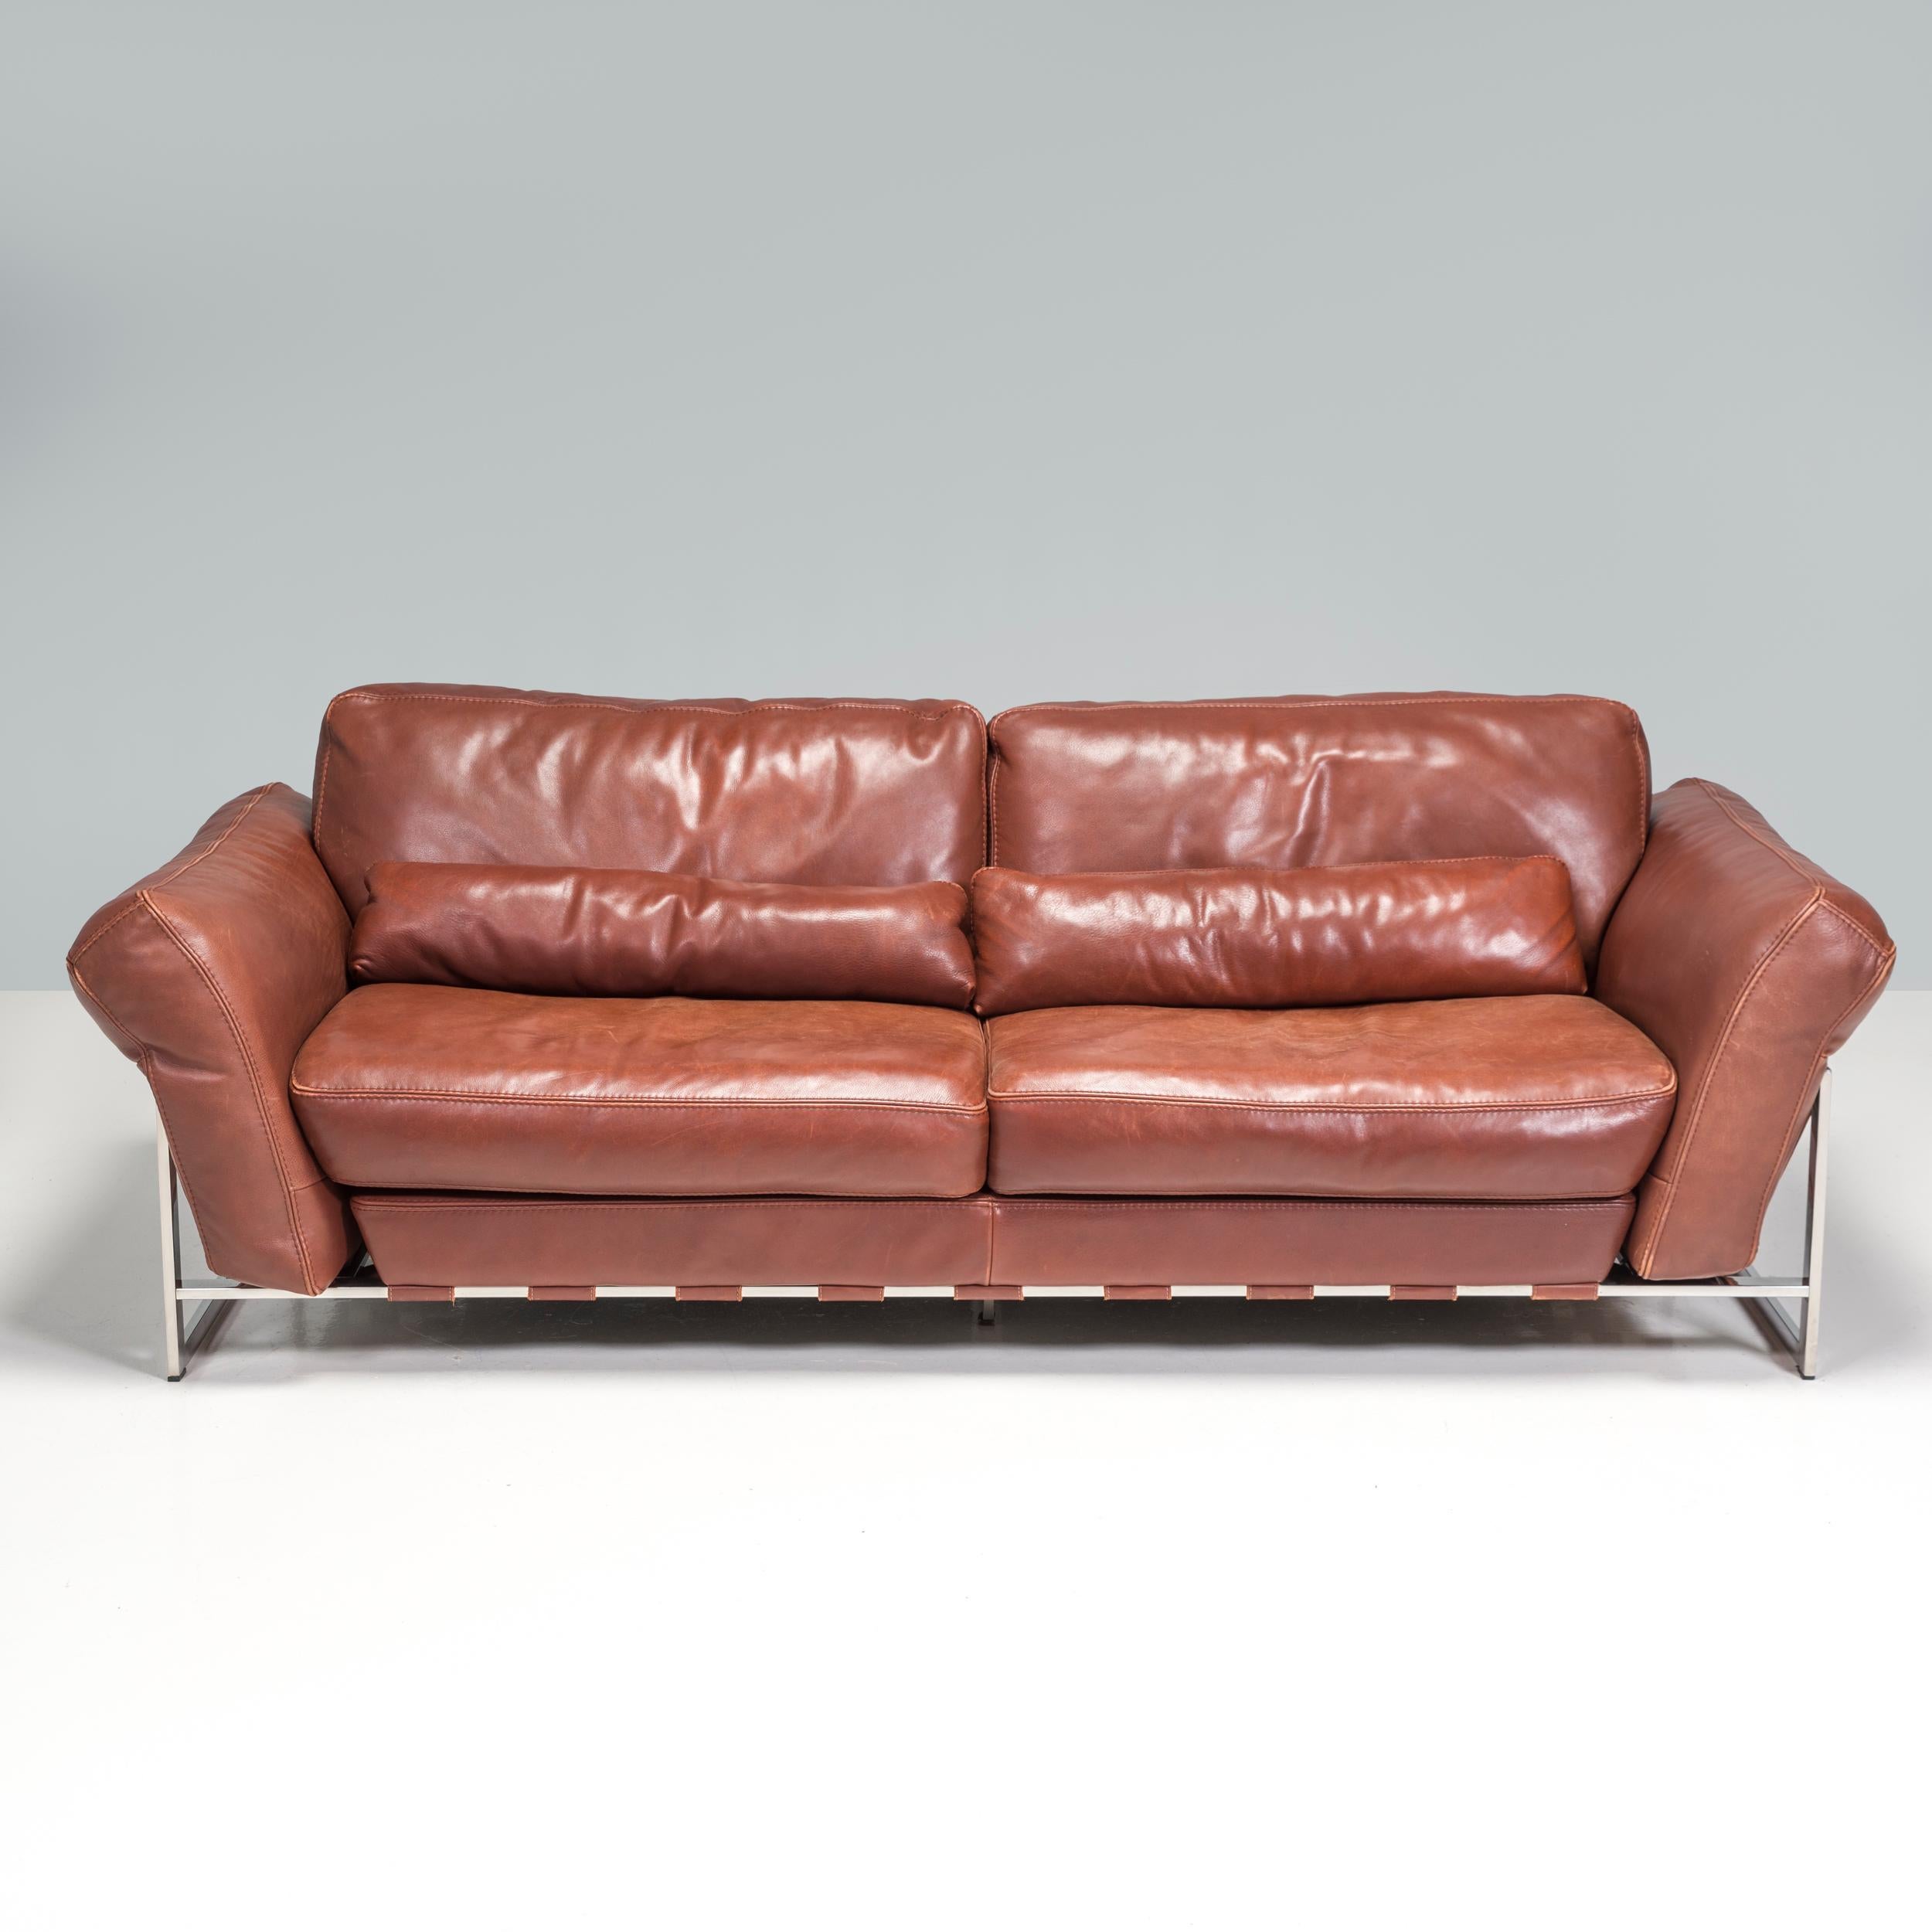 Conçu et fabriqué par Roche Bobois, ce canapé est l'équilibre parfait entre confort et style.

Doté d'une structure angulaire en chrome poli, le canapé est équipé d'un cerclage en cuir marron contrastant qui crée la structure nécessaire au maintien